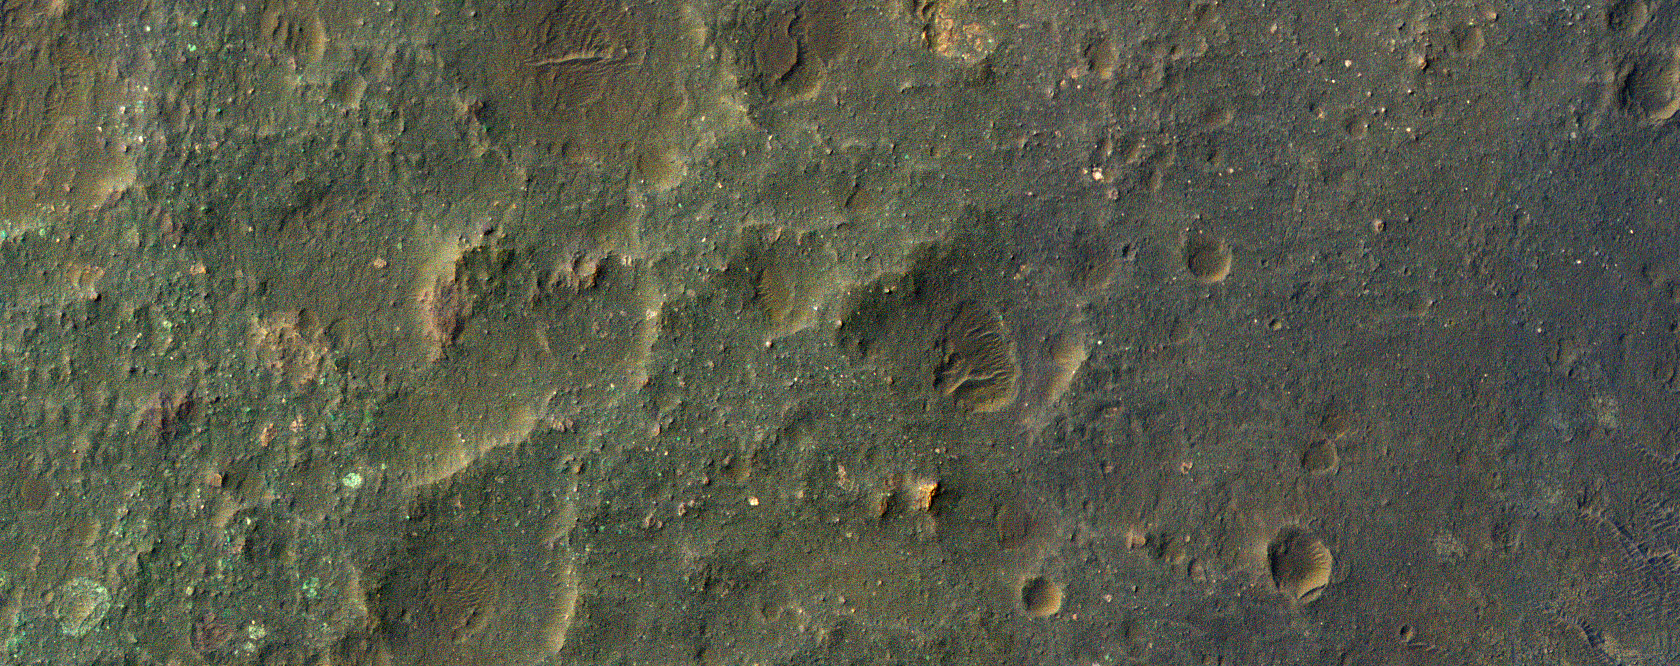 Megabrekzien auf dem Boden des Luba-Kraters